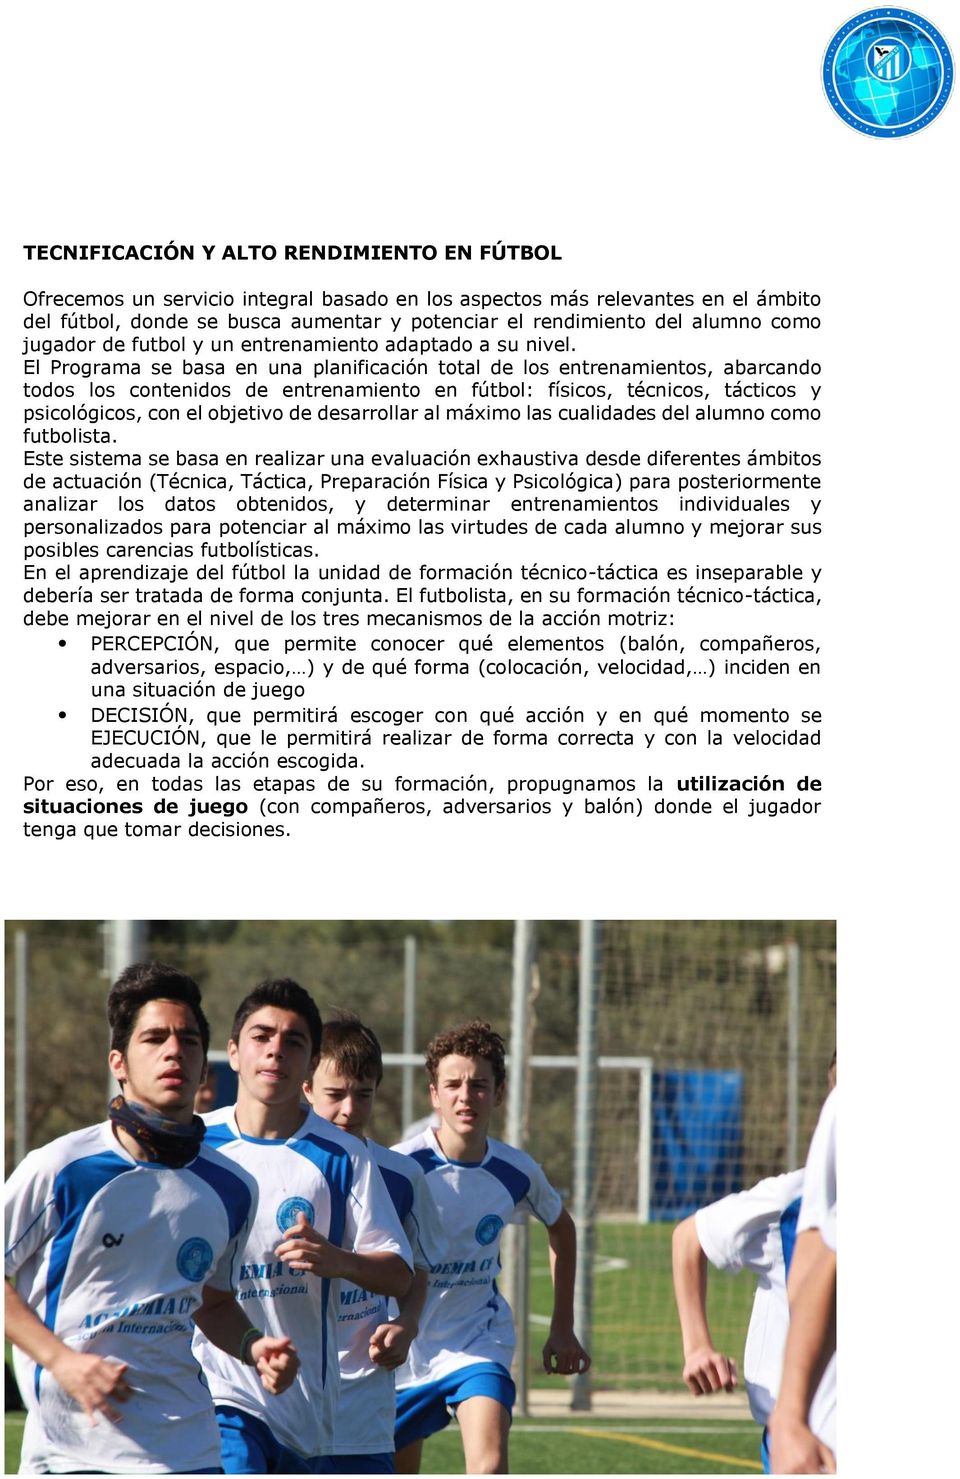 El Programa se basa en una planificación total de los entrenamientos, abarcando todos los contenidos de entrenamiento en fútbol: físicos, técnicos, tácticos y psicológicos, con el objetivo de